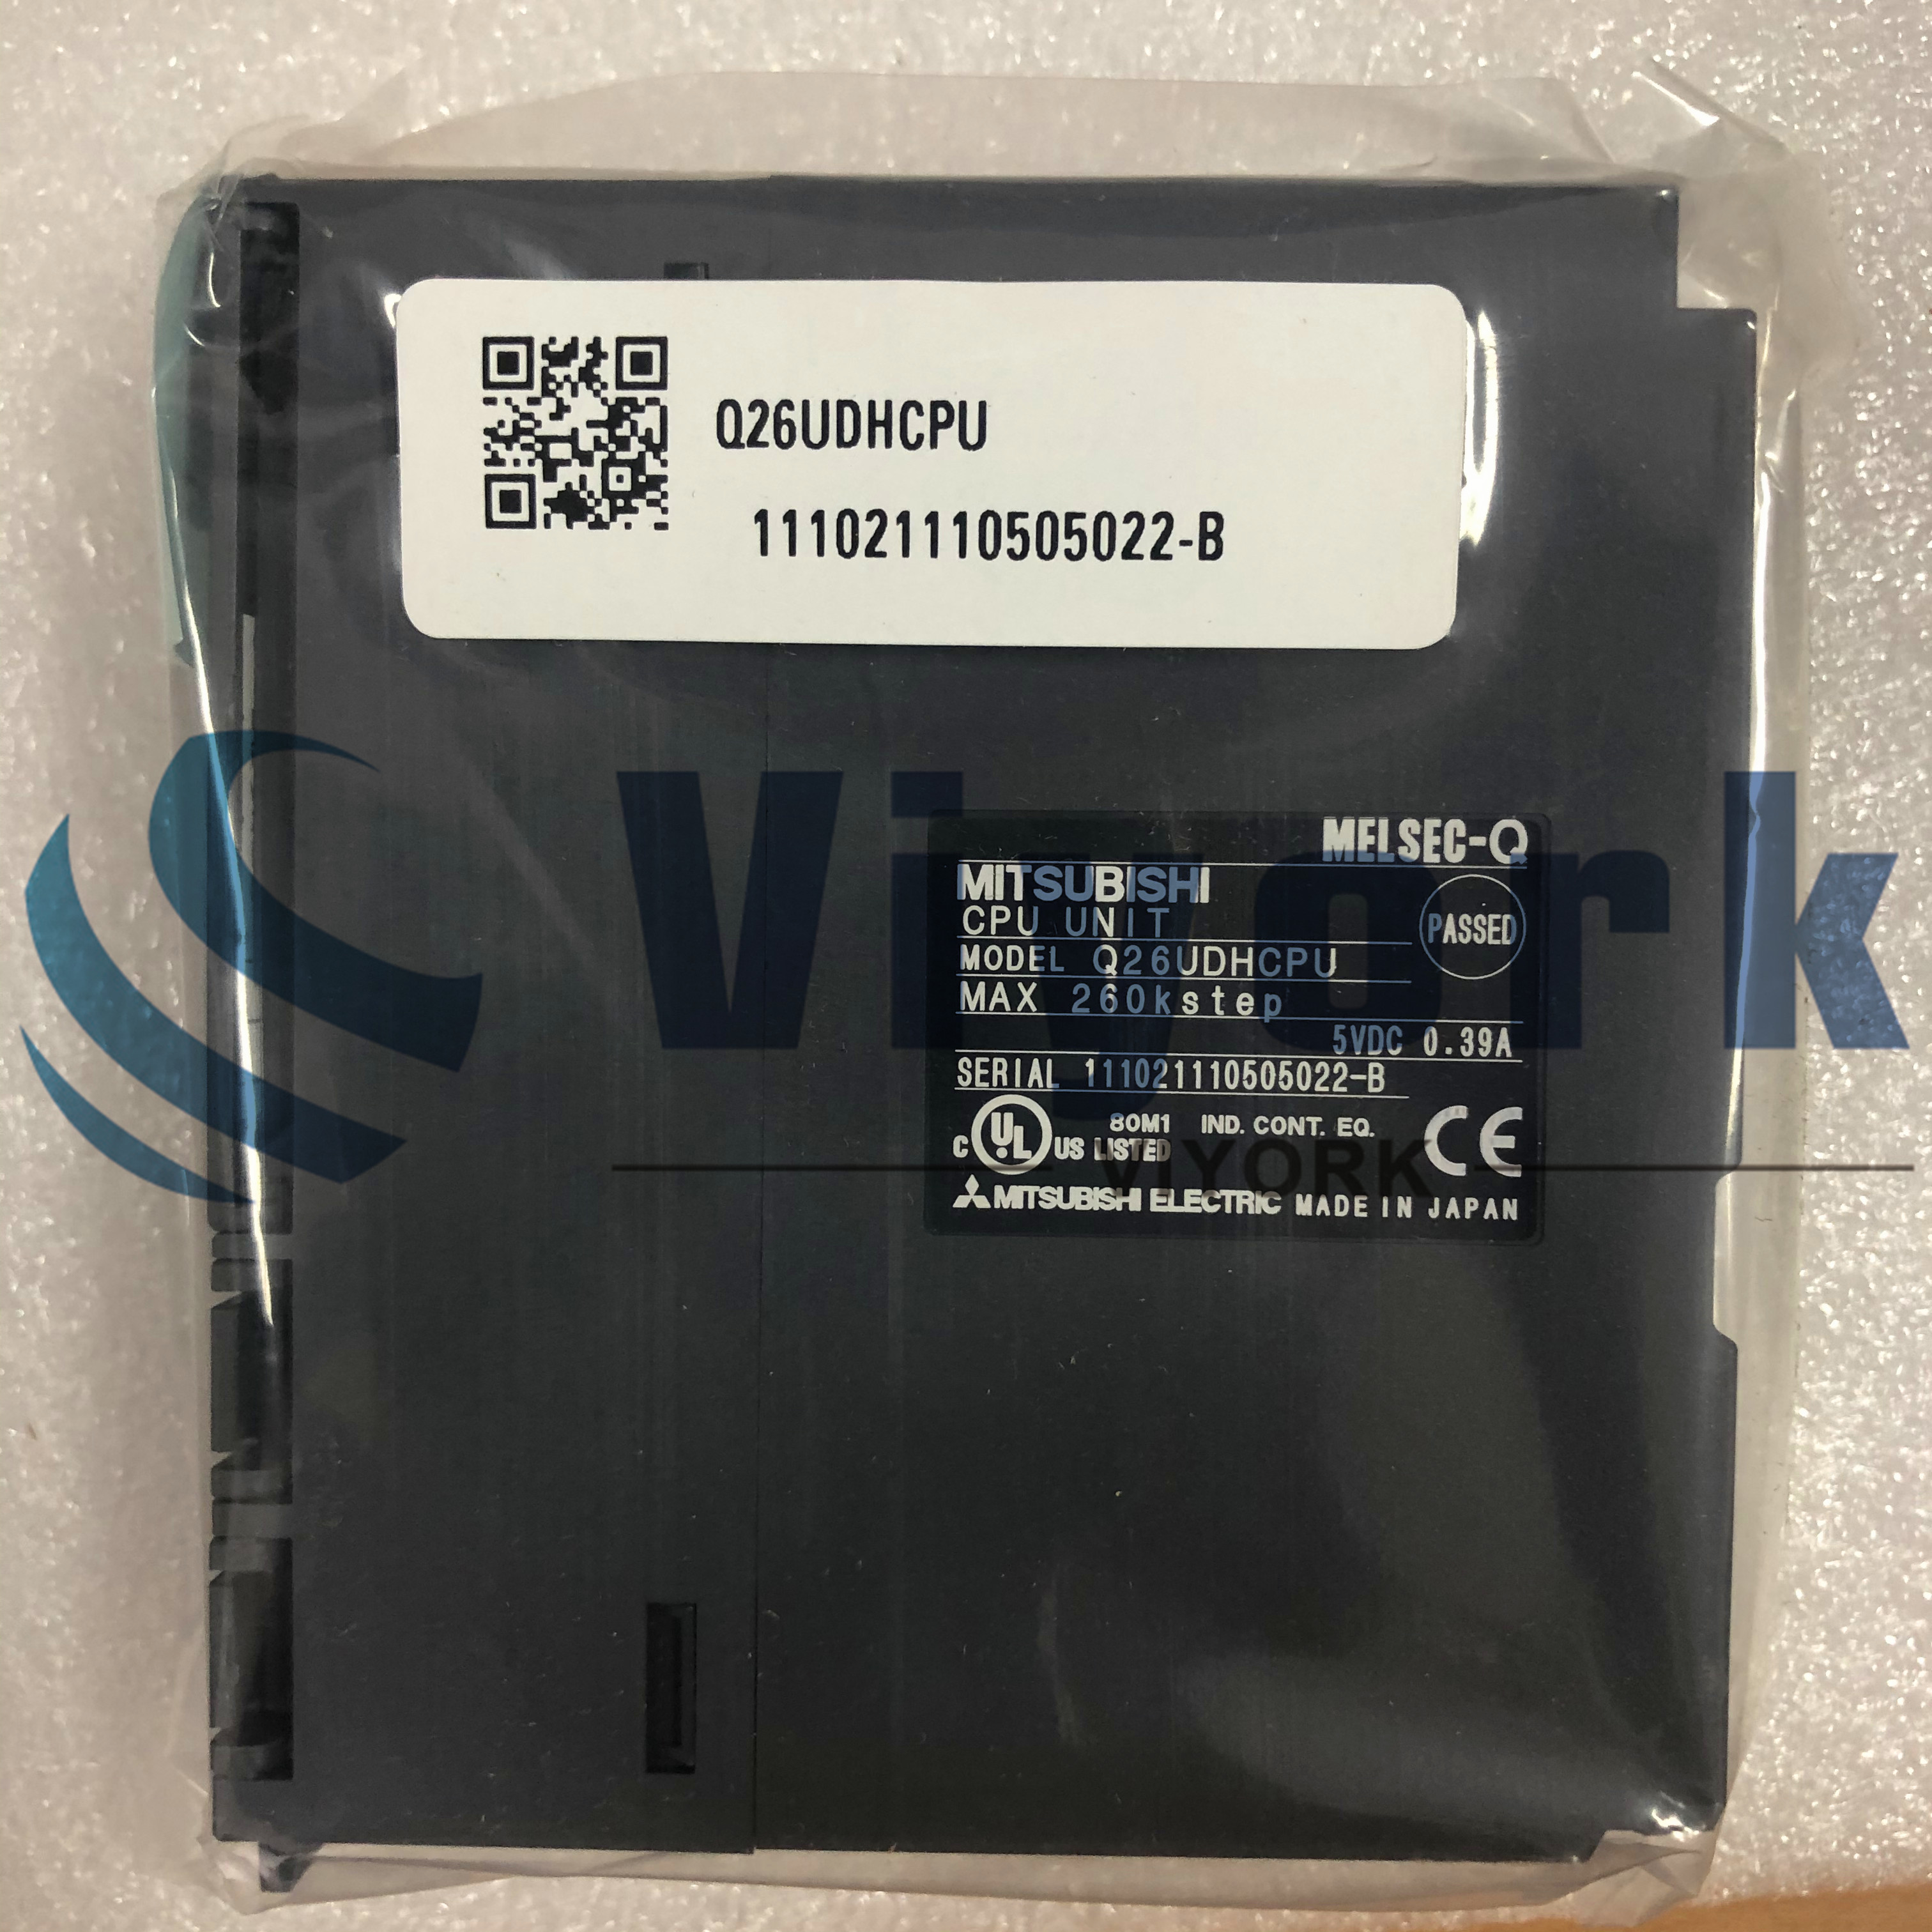 Mitsubishi Q26UDHCPU CPU IQ 260K STEP 4096 I/O NEW